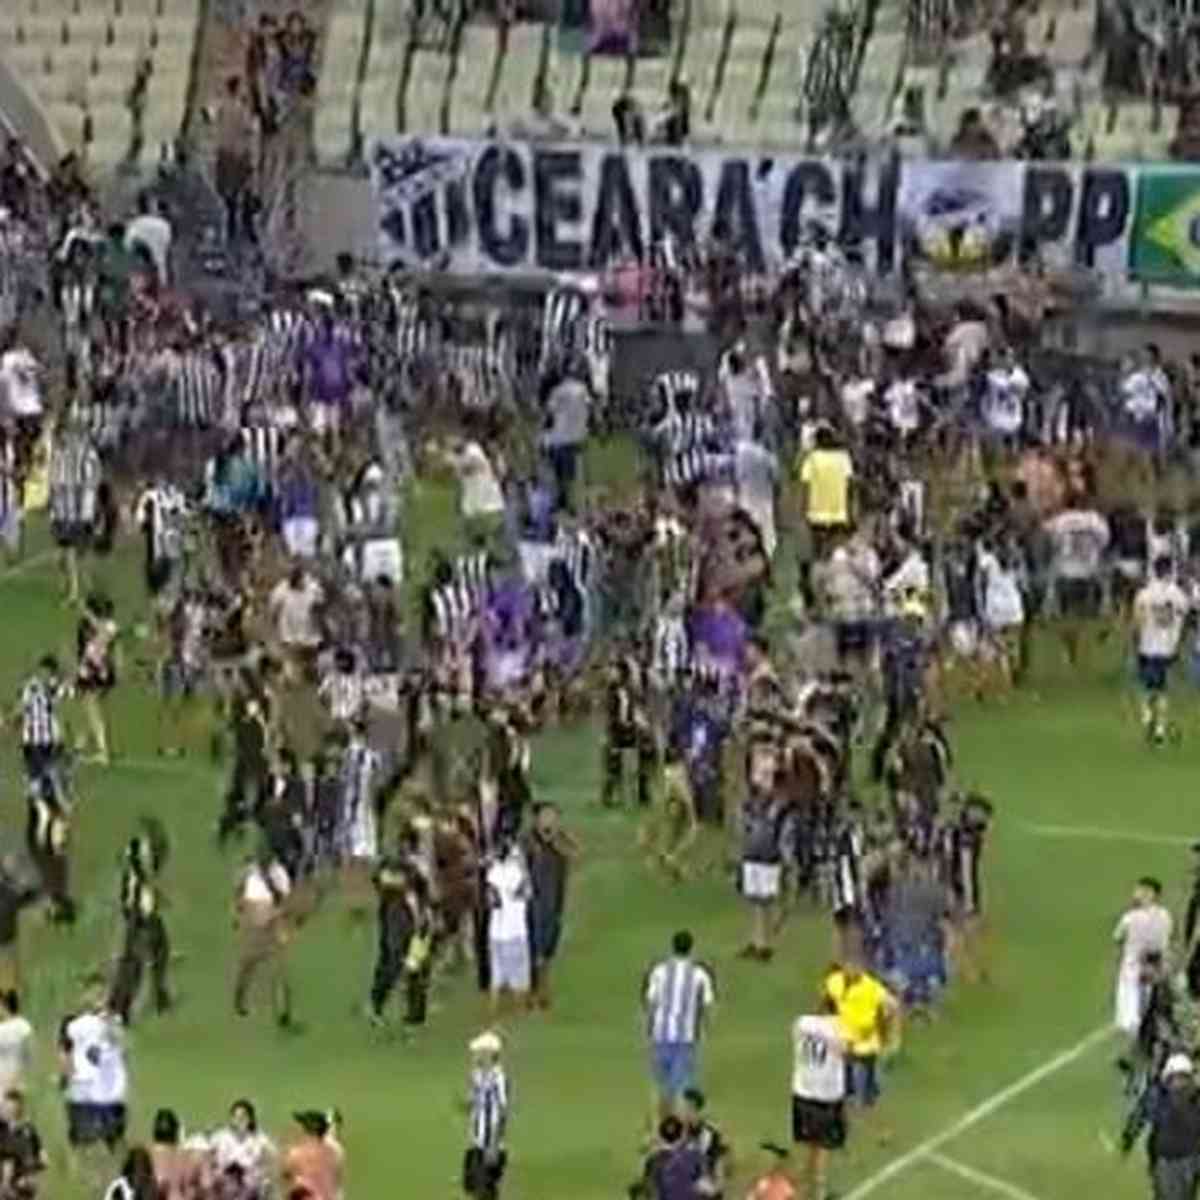 JOGÃO DE BOLA: Comercial Esporte Clube recebe o Vasco do Acre em amistoso  neste sábado (12) no Marreirão - Tá no Foco